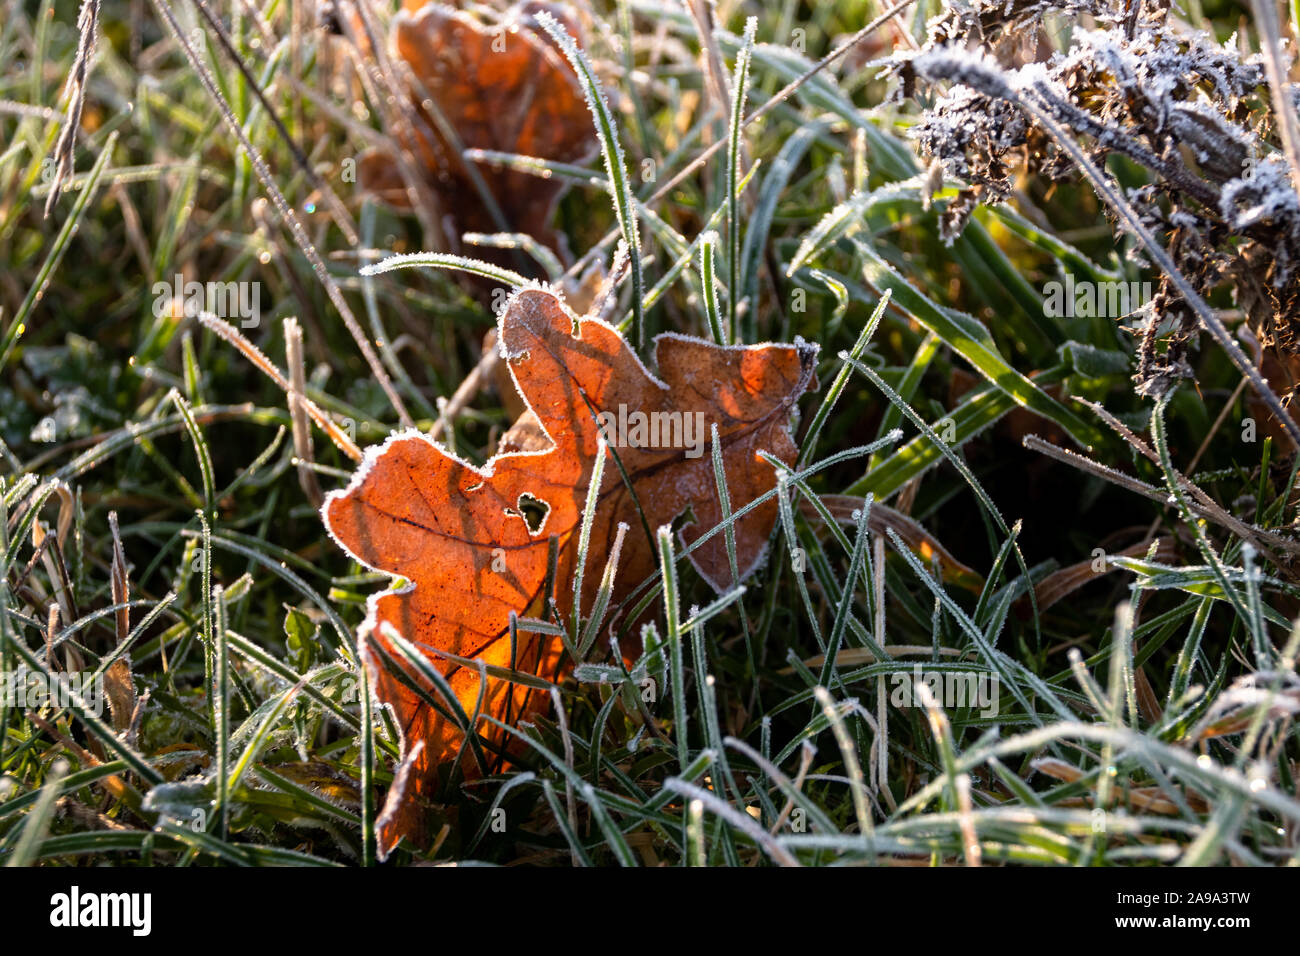 Herbstfarbenes Eichenblatt liegt zwischen gefrorenen Grashalmen Foto de stock